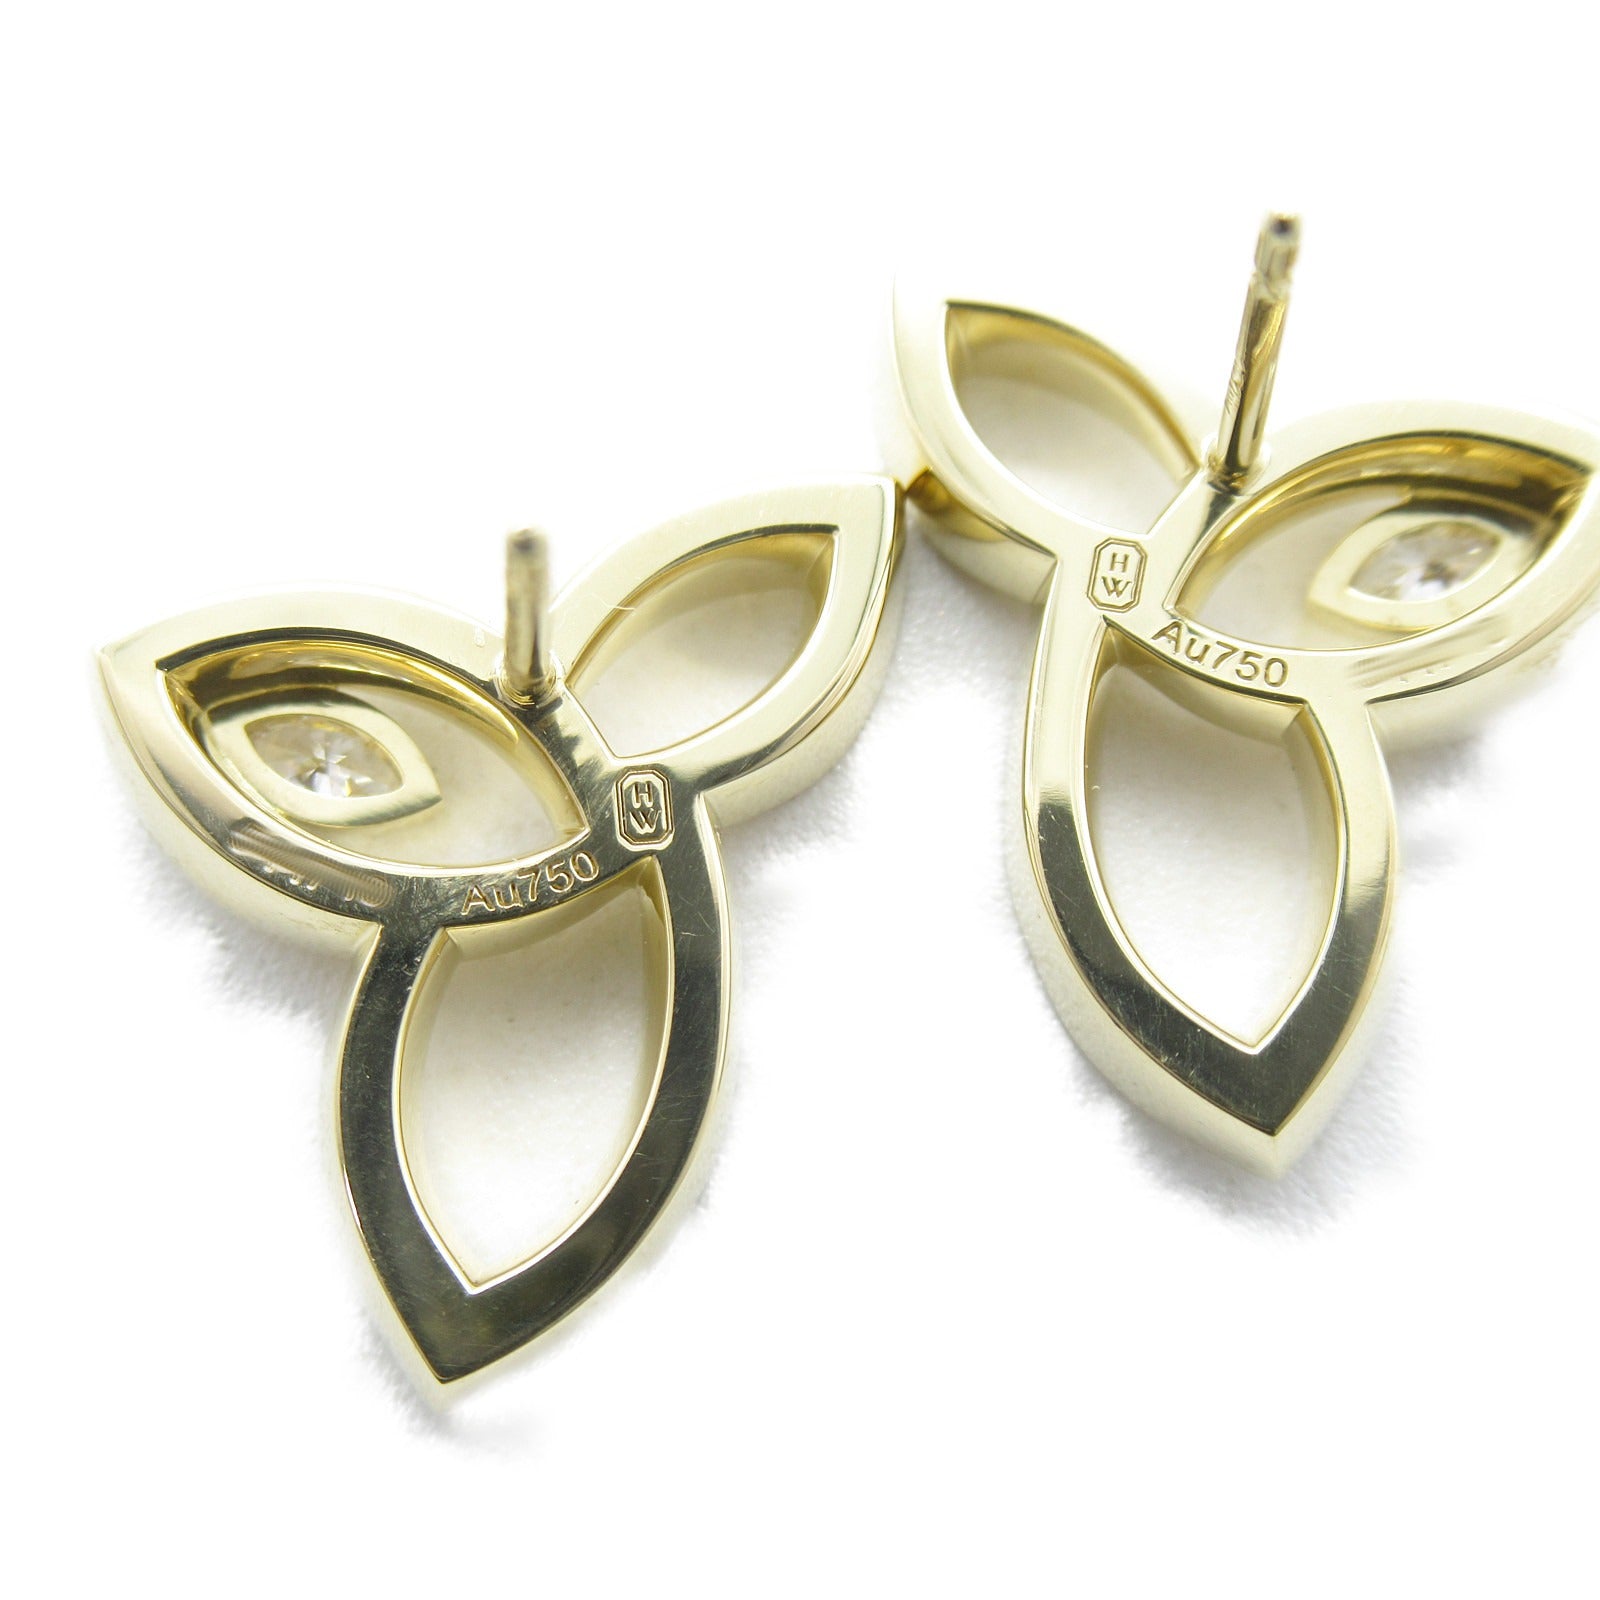 Harry Winston Harry Winston Lilly Cluster Earrings Jewelry K18 (yellow g) Diamond  Clear EADYMQRFLC